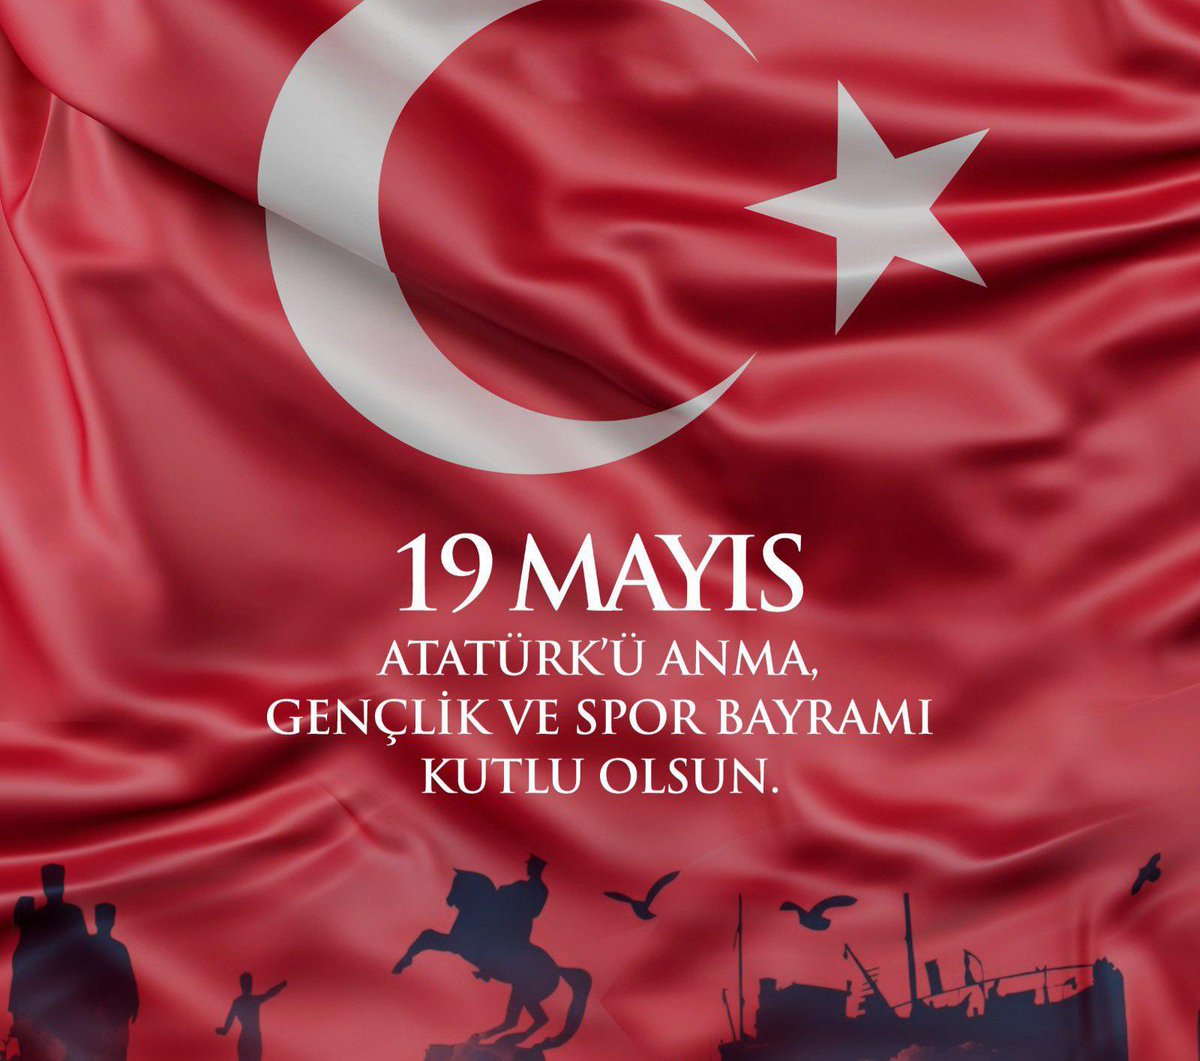 #19Mayıs1919, gençlik; gençlik ise gelecek demektir! Türk genci, Türk İstiklâli ve Türkiye Cumhuriyeti'mizin yılmaz bekçisi, bugün ve yarınların en büyük güvencesidir. Milletçe tam bağımsızlığa yürüyüşümüzün 102’nci yılı kutlu olsun! 🇹🇷